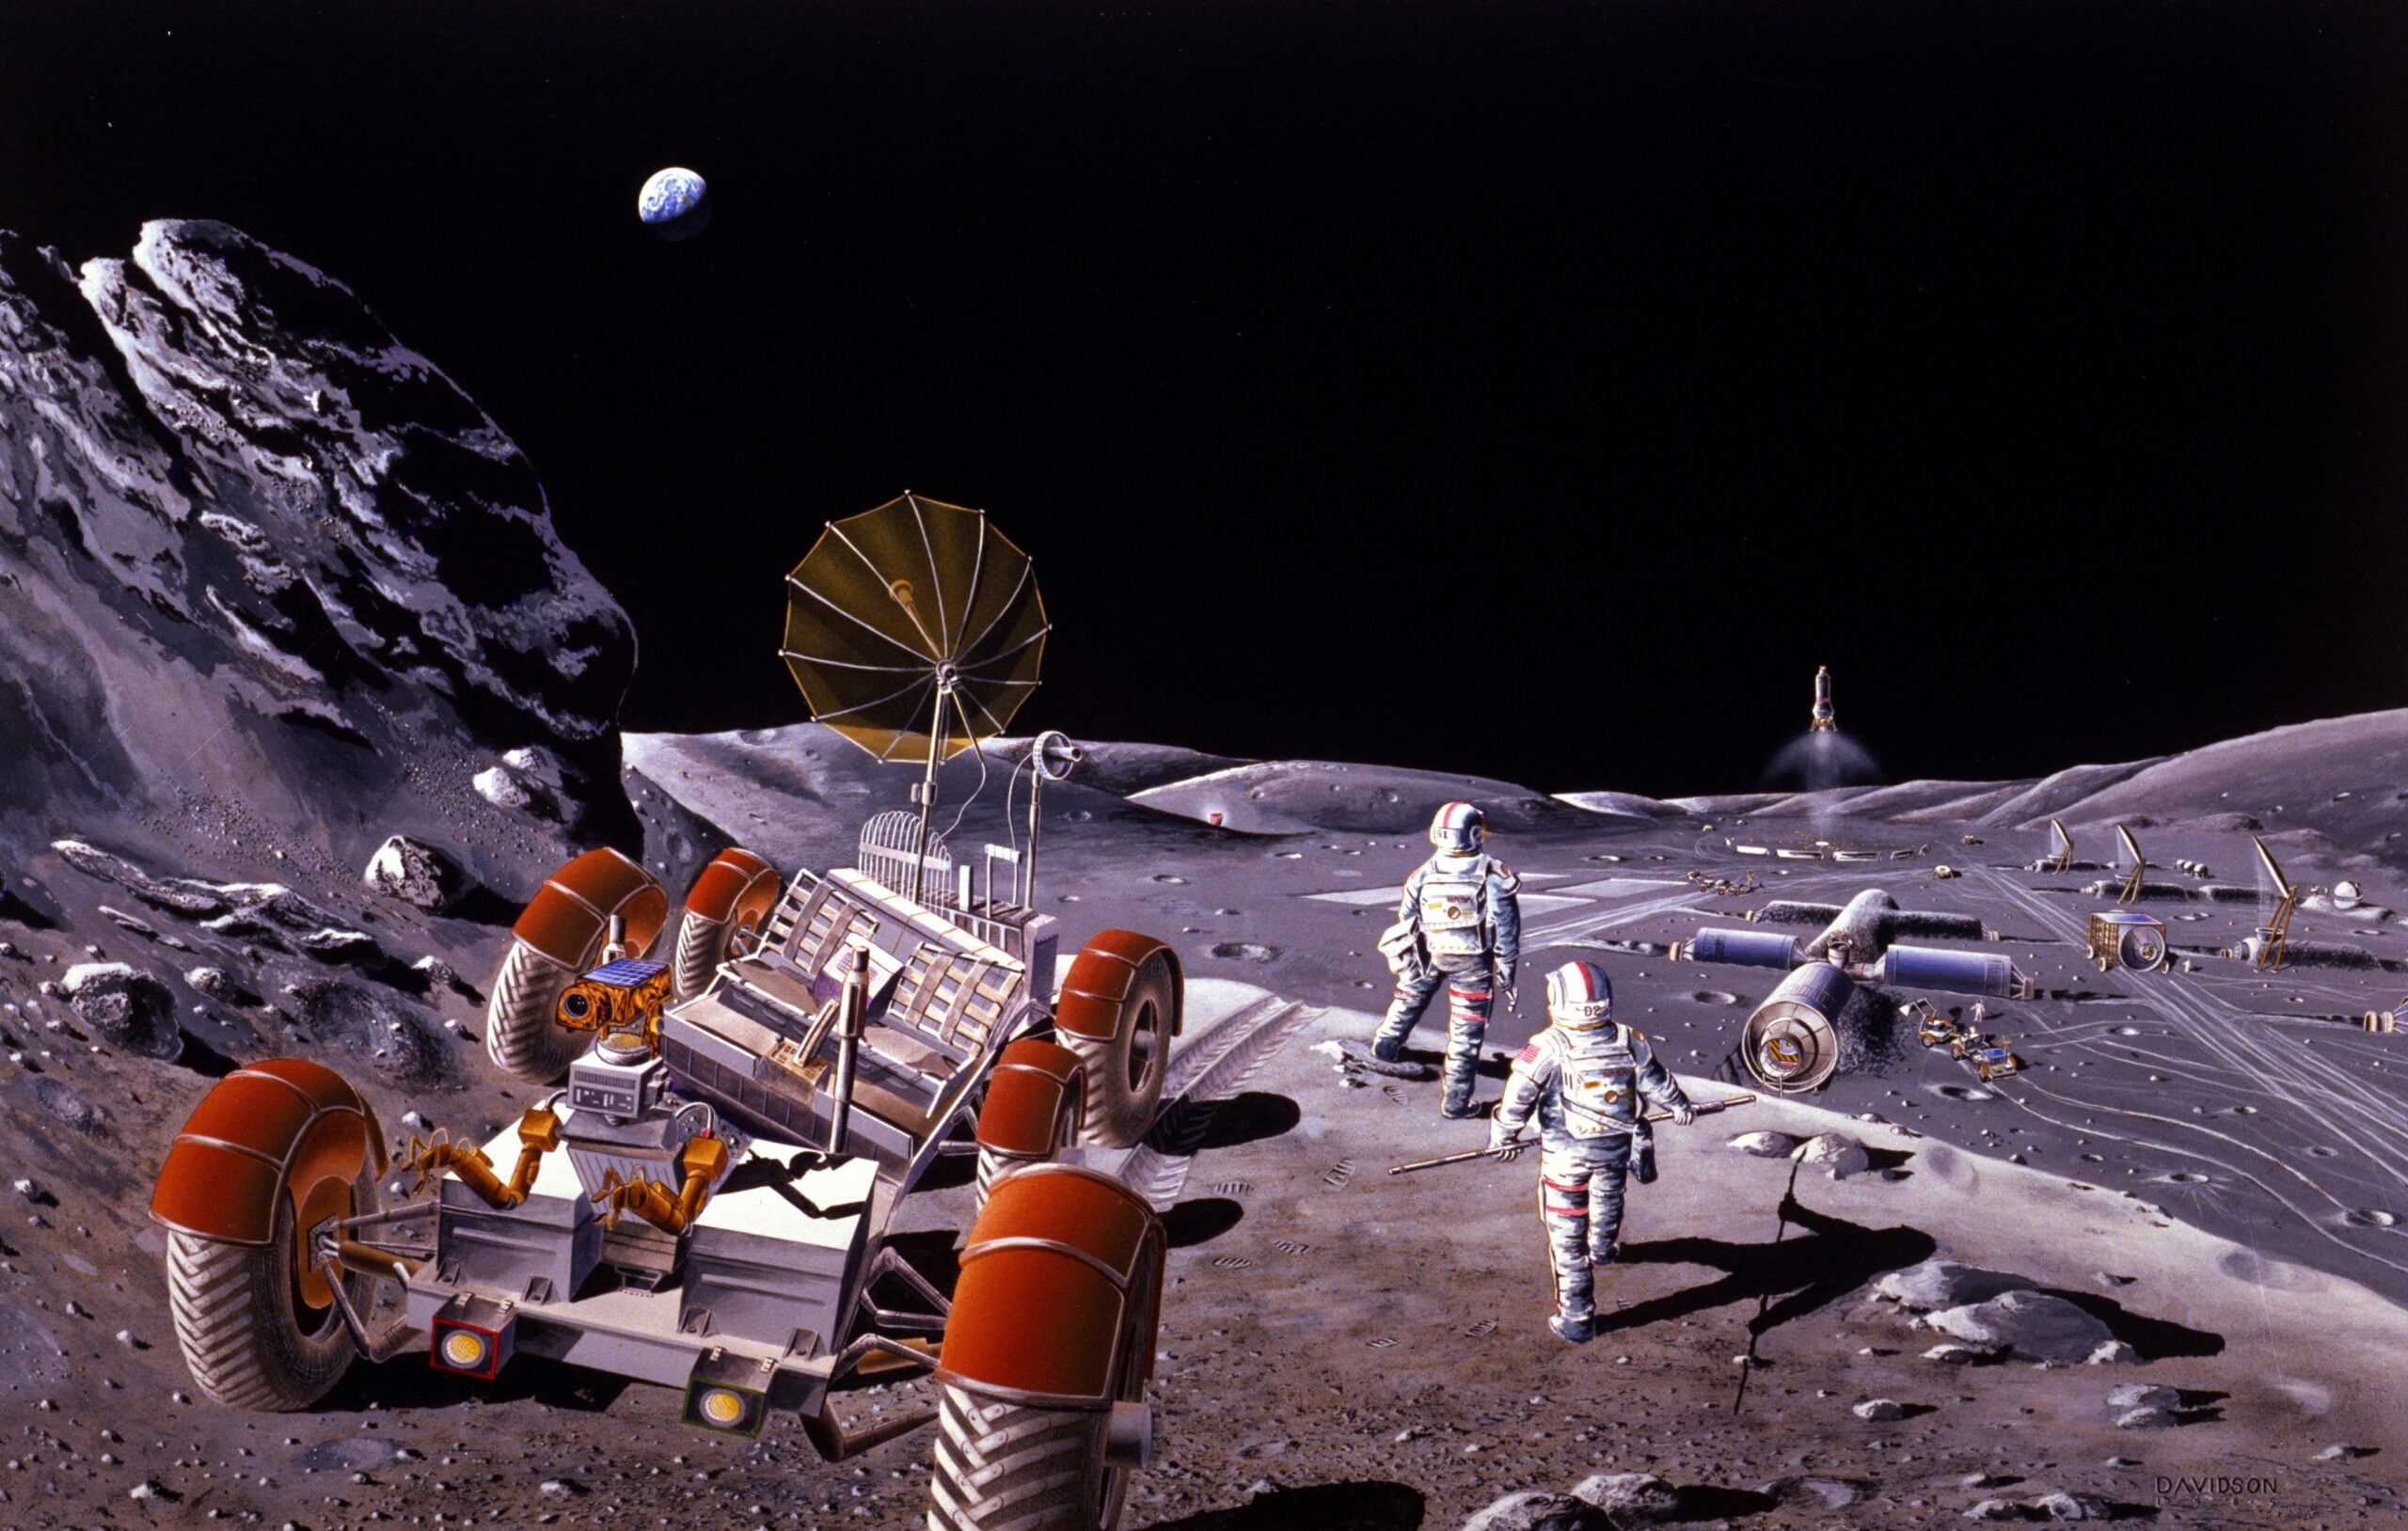 Scena przedstawiająca astronautów, pojazd księżycowy i wyposażenie na powierzchni Księżyca z planetą Ziemia widoczną w tle.